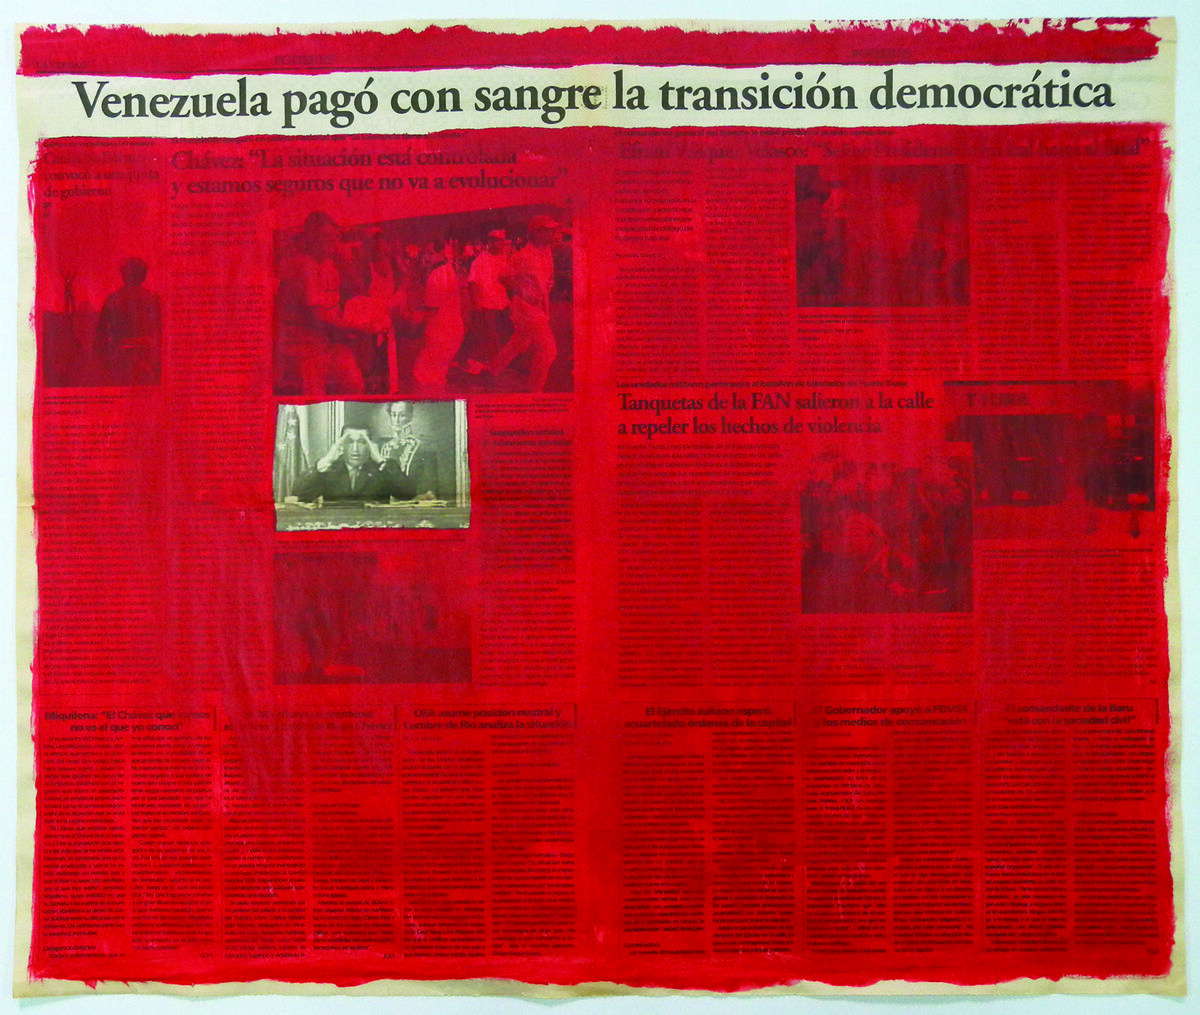 Marco Montiel-Soto, Serie La verdad no es noticia, 2016; Acrylics on newspaper, 57.5 x 68.5 cm. Courtesy of Gallery Carmen Araujo Arte.